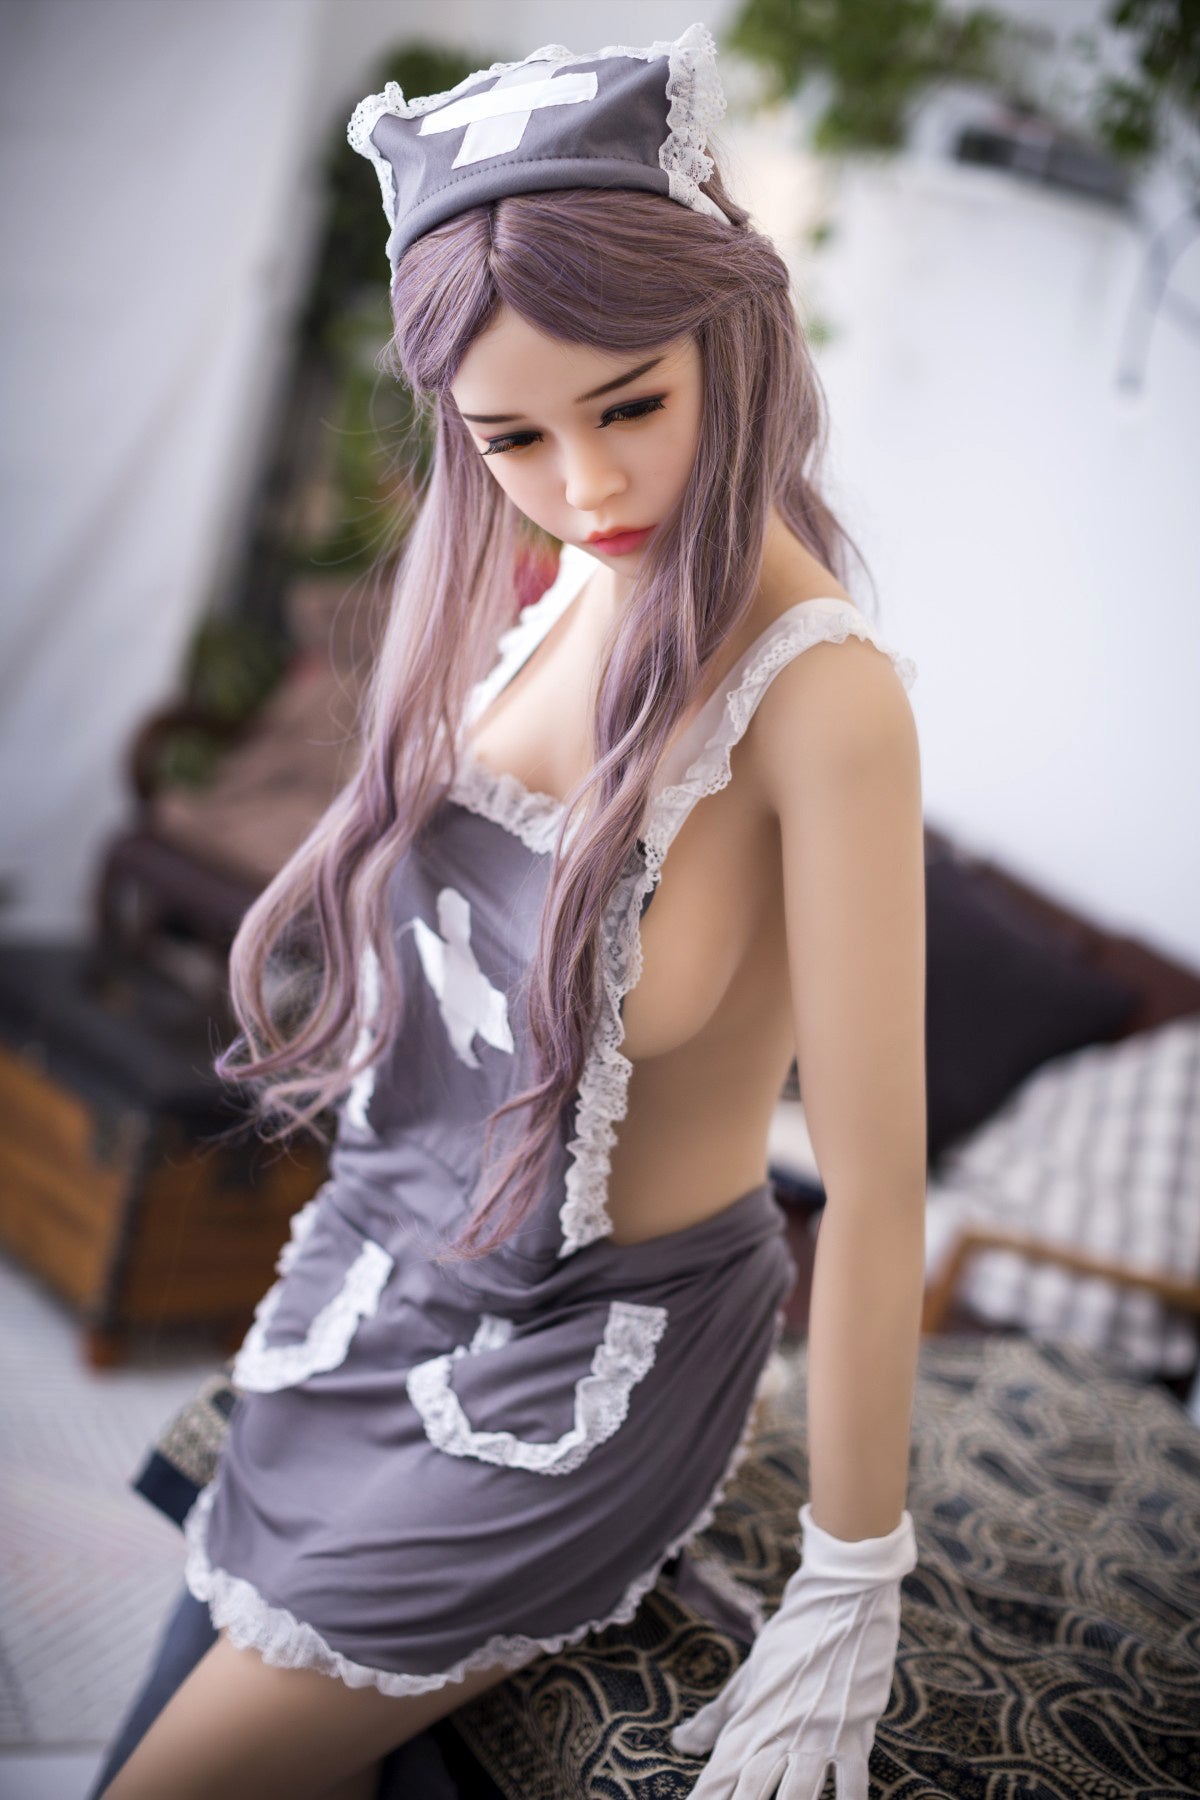 Saffron: WM Asian Sex Doll - Sex Doll Queen